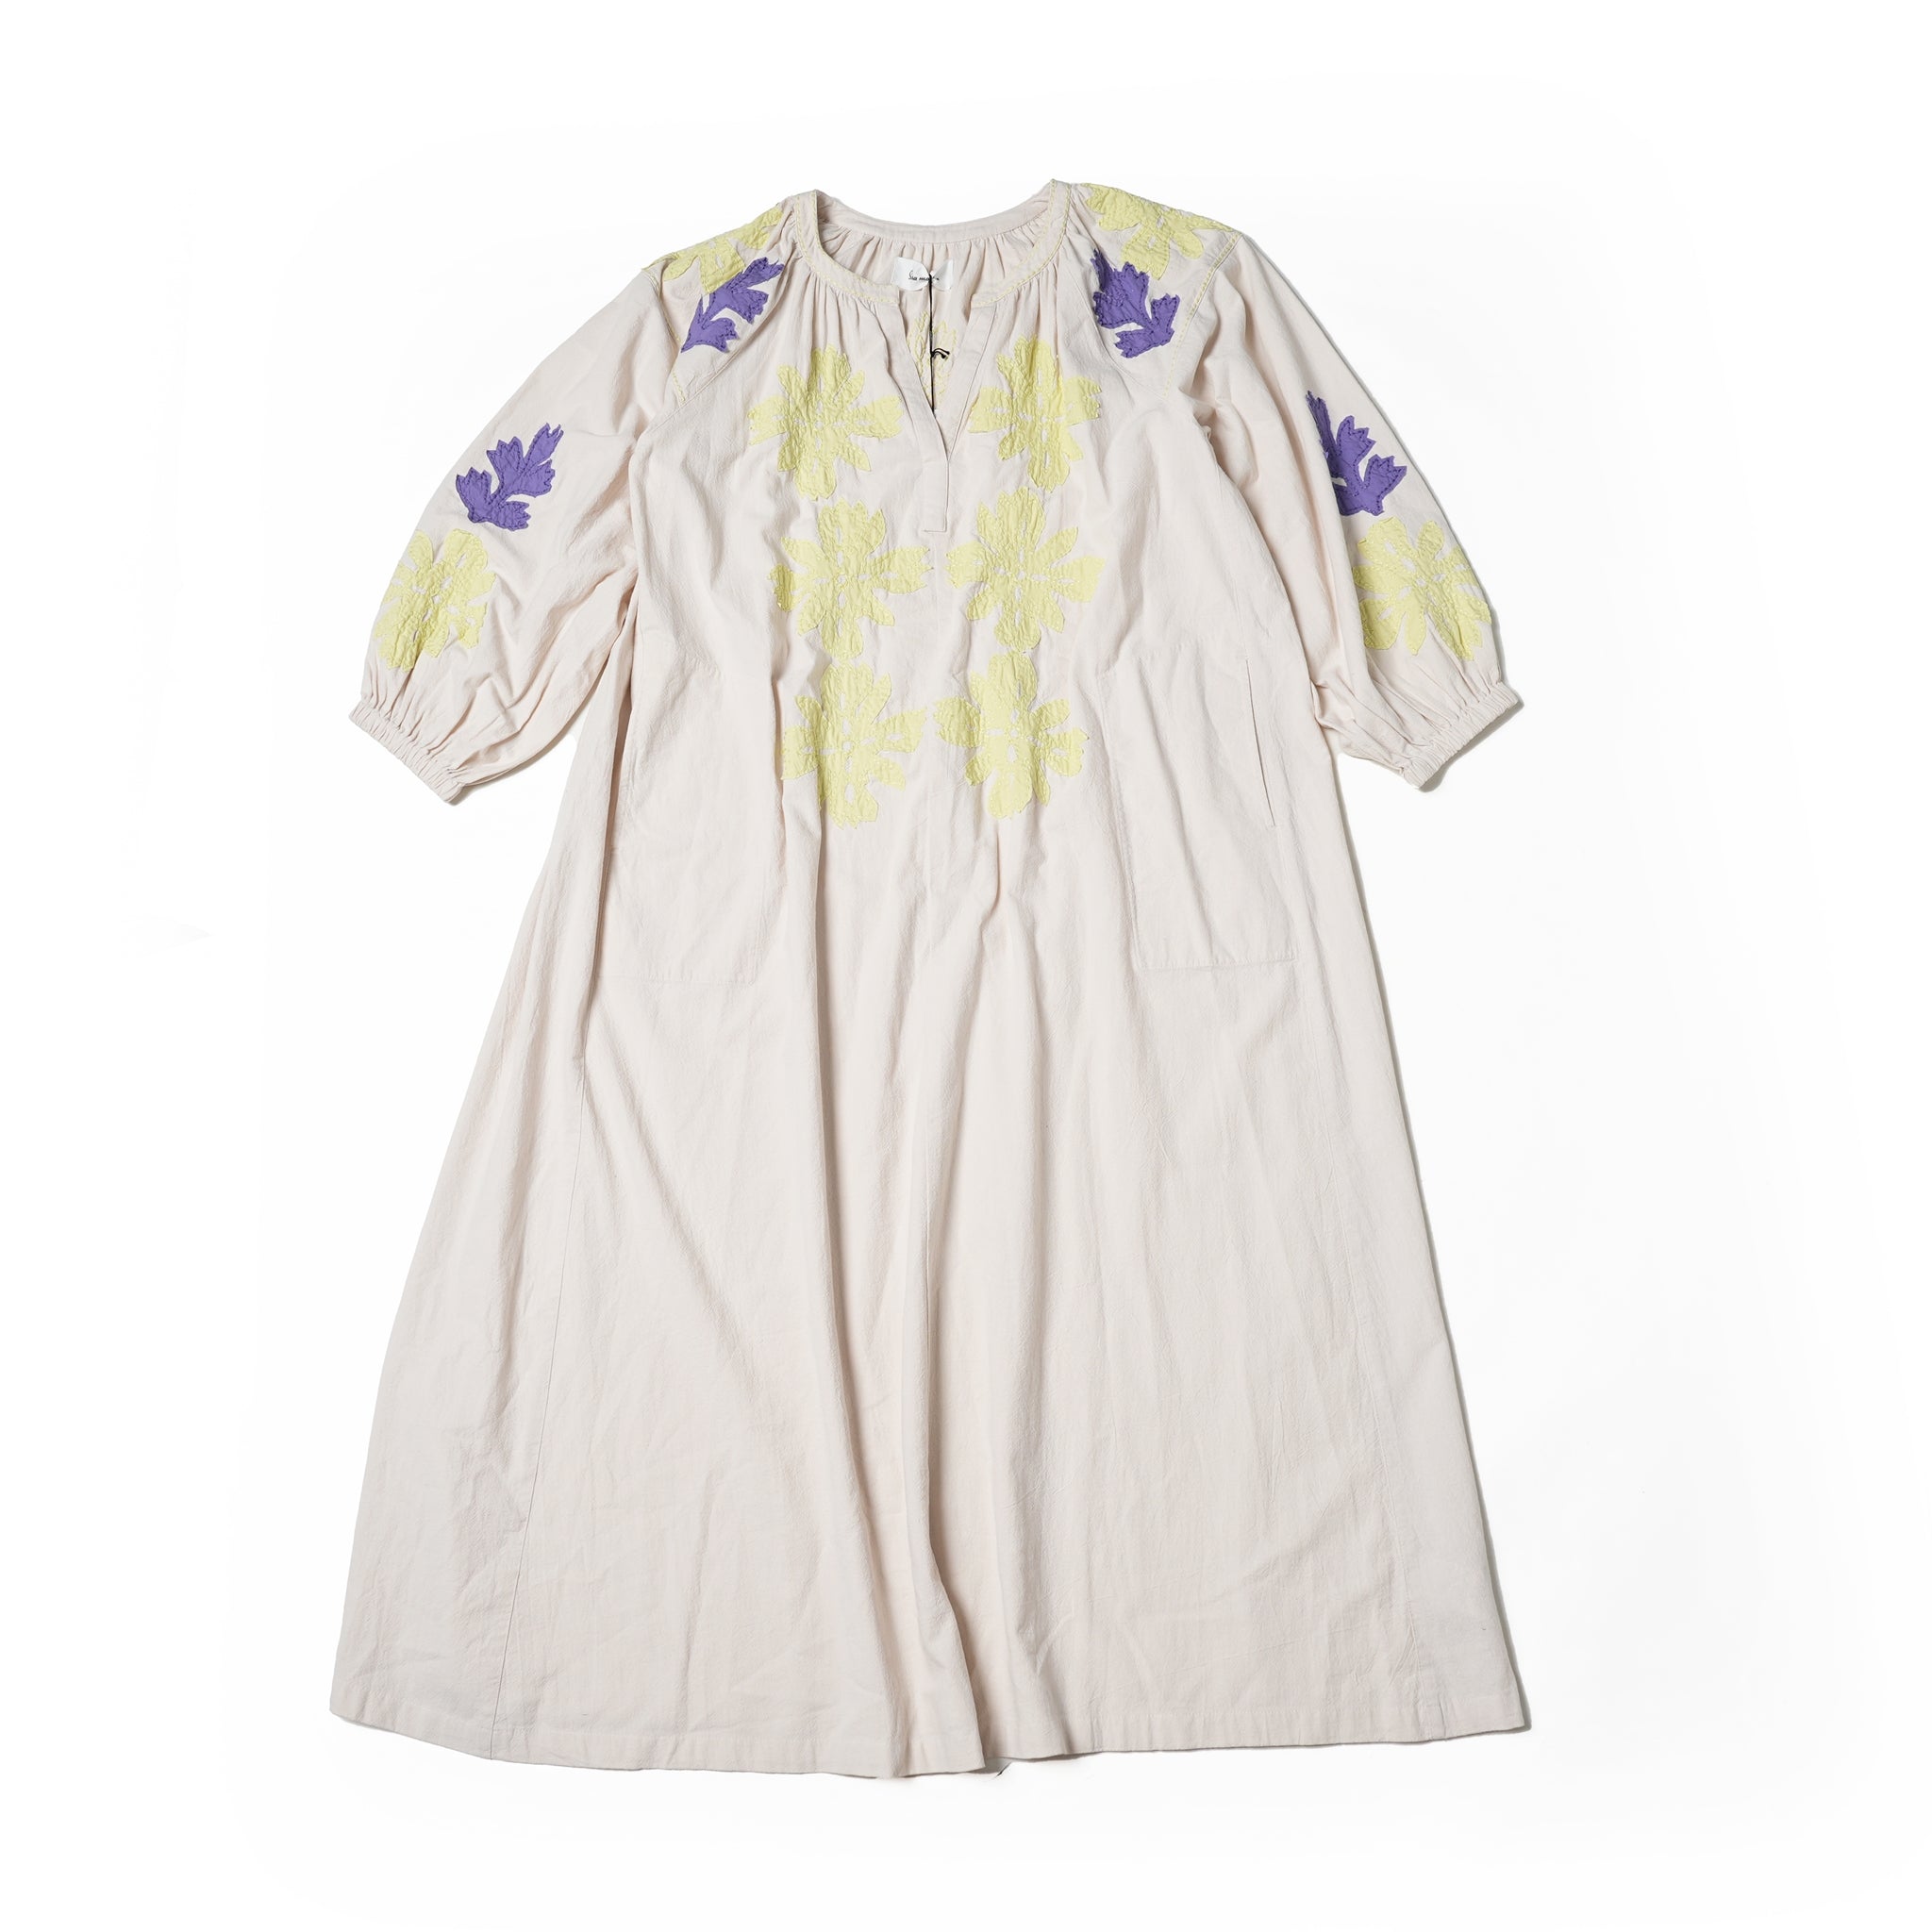 No:020432SA1b | Name:COTTON FLOWER PATCHWORK DRESS | Color:Ecru